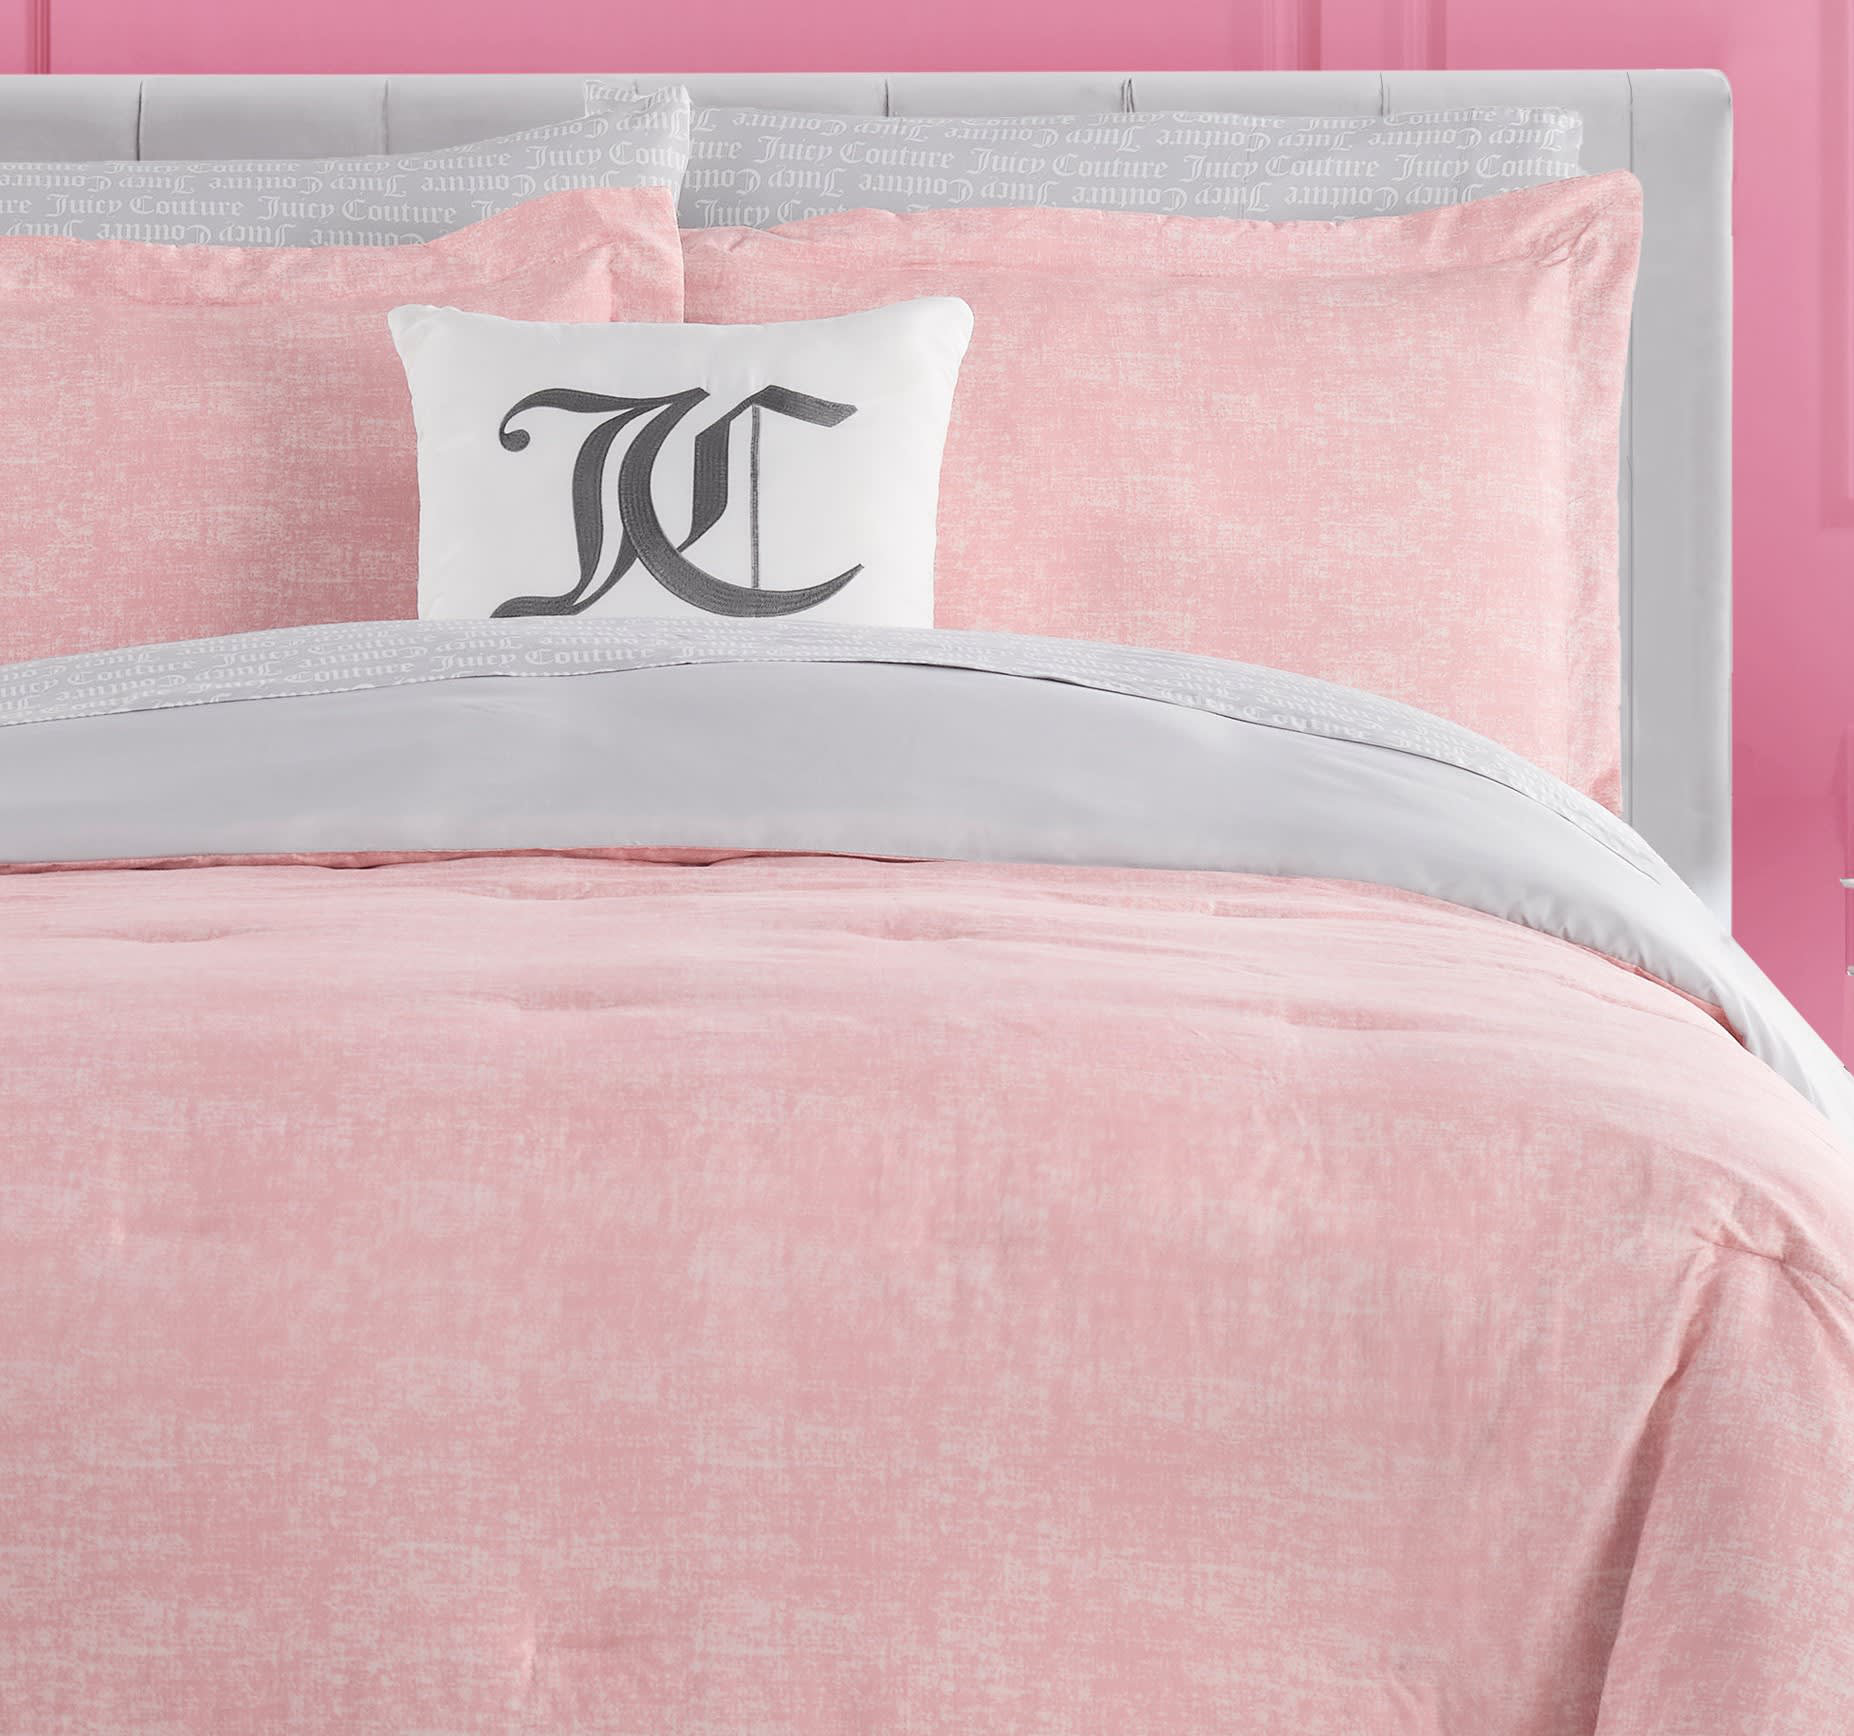 Juicy Couture Texture 8-Pc. Comforter Set, Queen - Pink, Gray